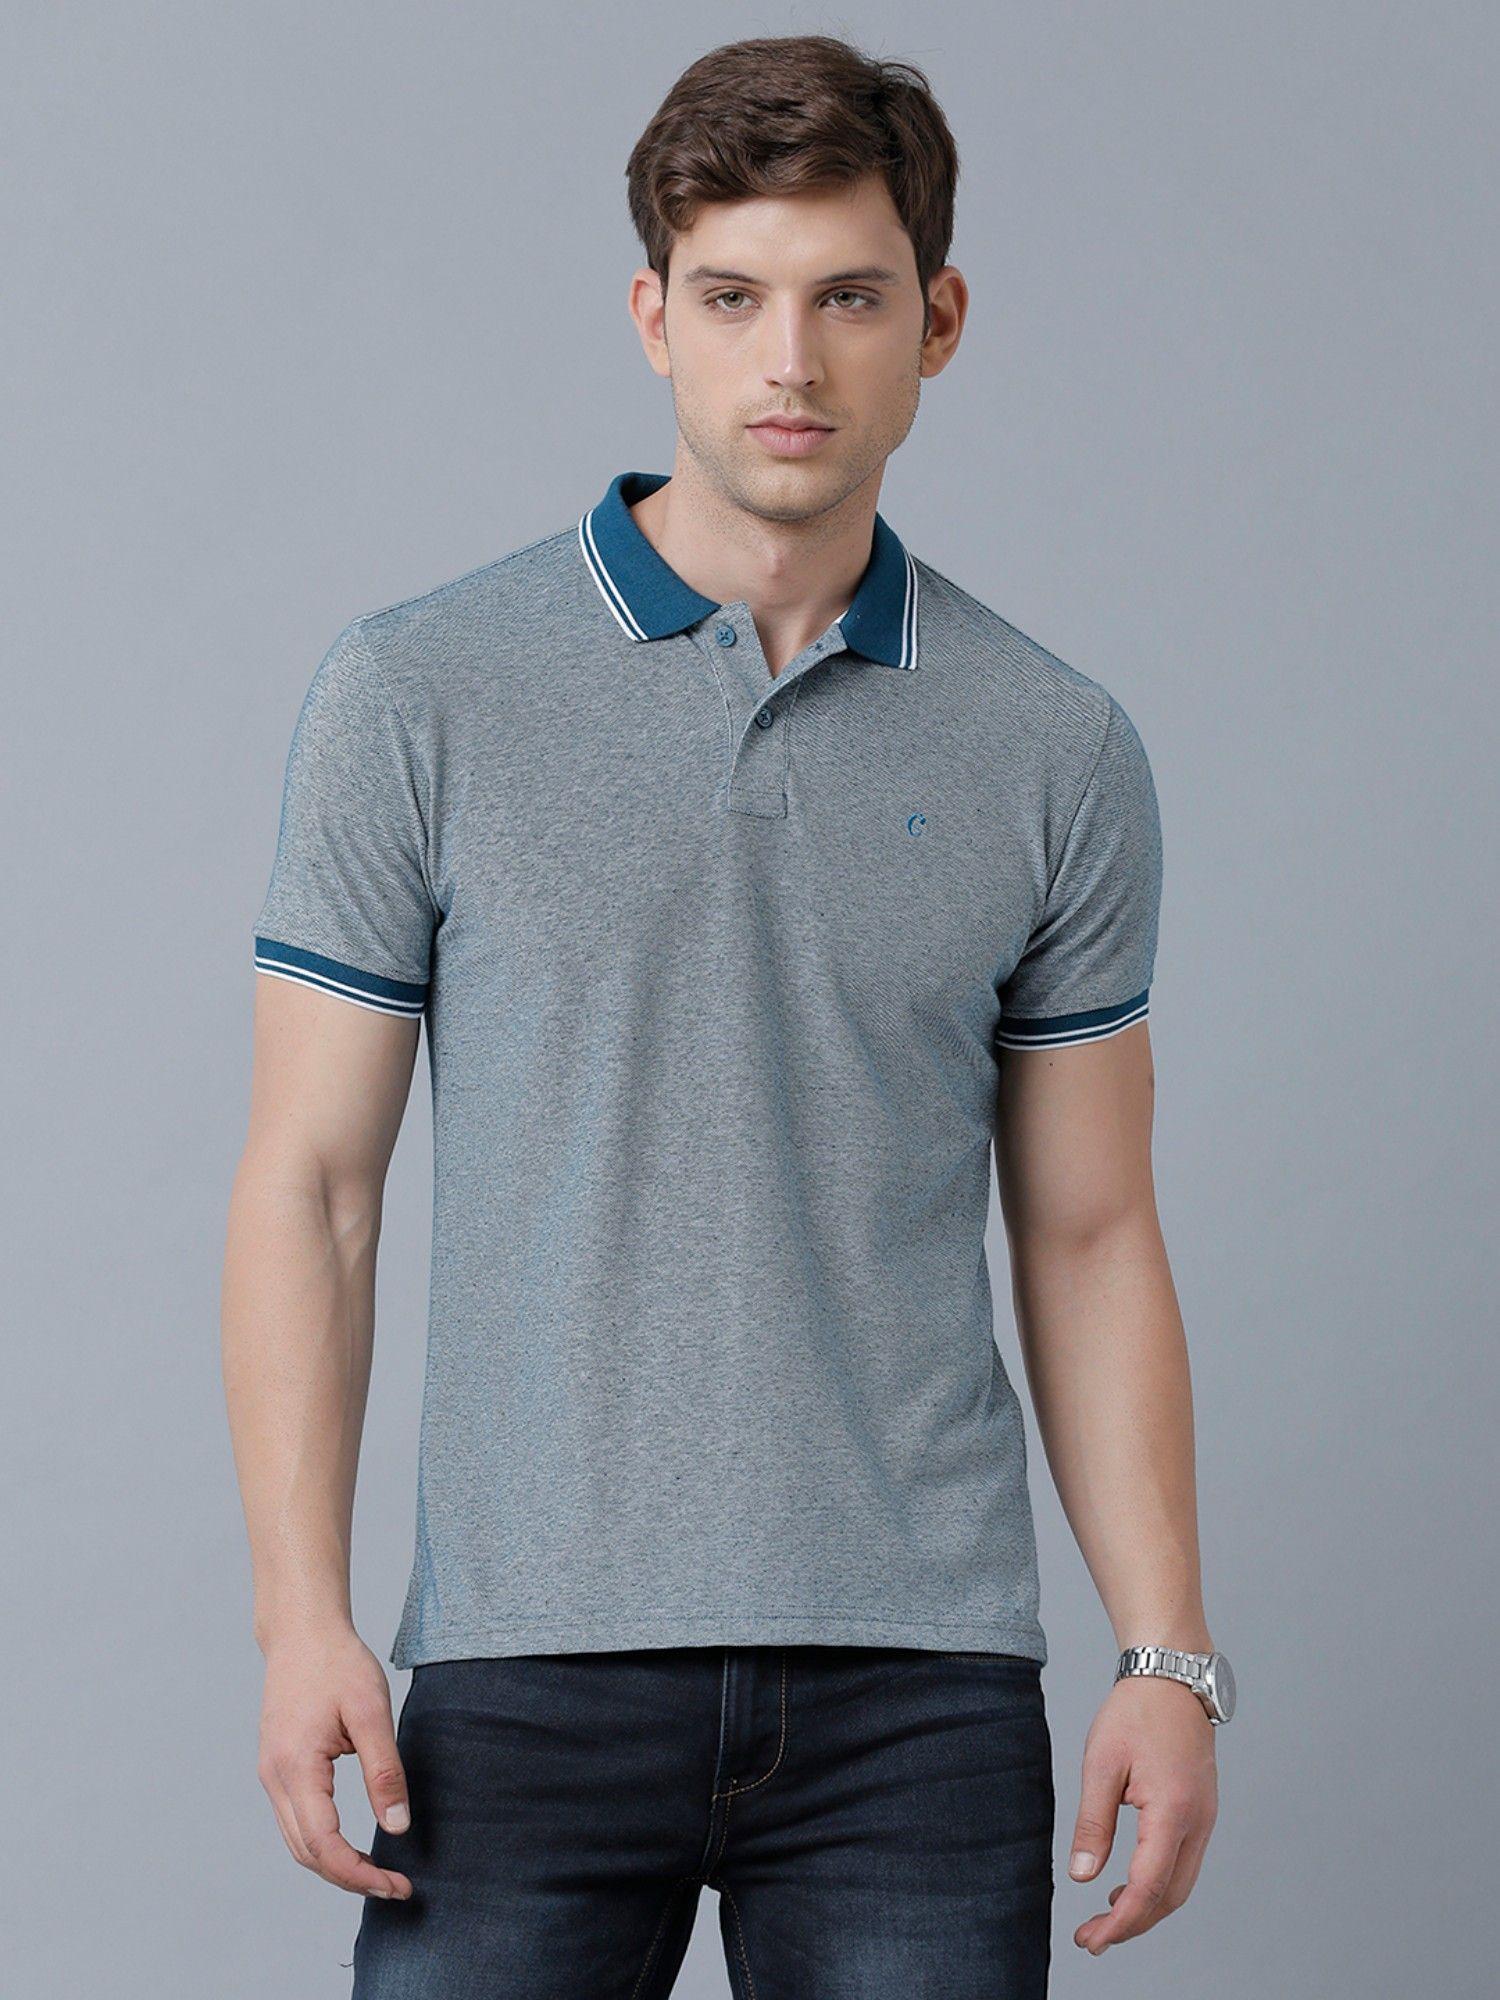 men's cotton linen turquoise blue solid t-shirt